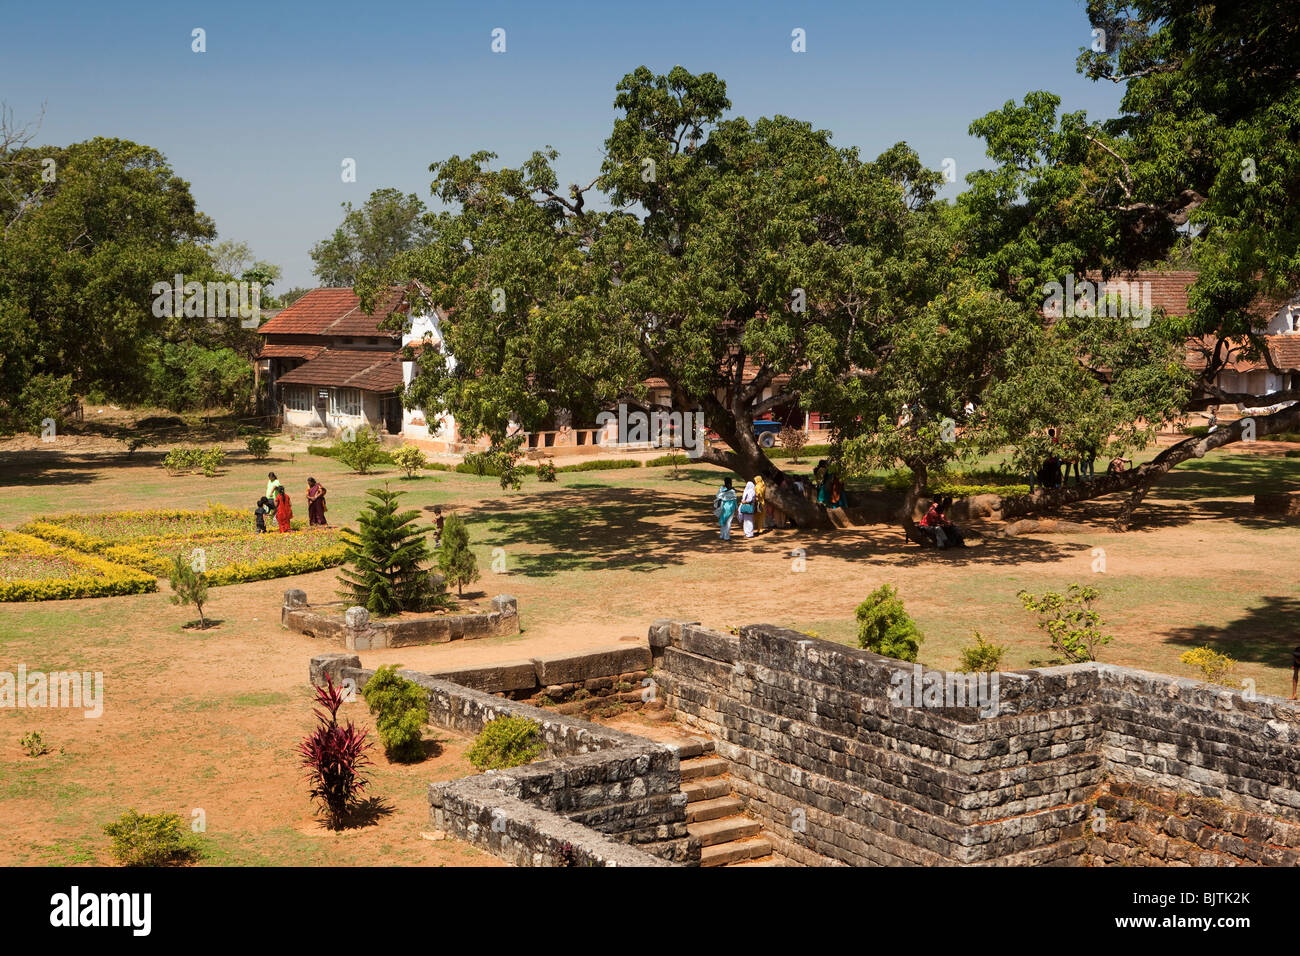 L'Inde, le Kerala, Palakkad, visiteurs indiens à l'intérieur du fort de Tipu Sultan, bult par Haider Ali en 1766 Banque D'Images